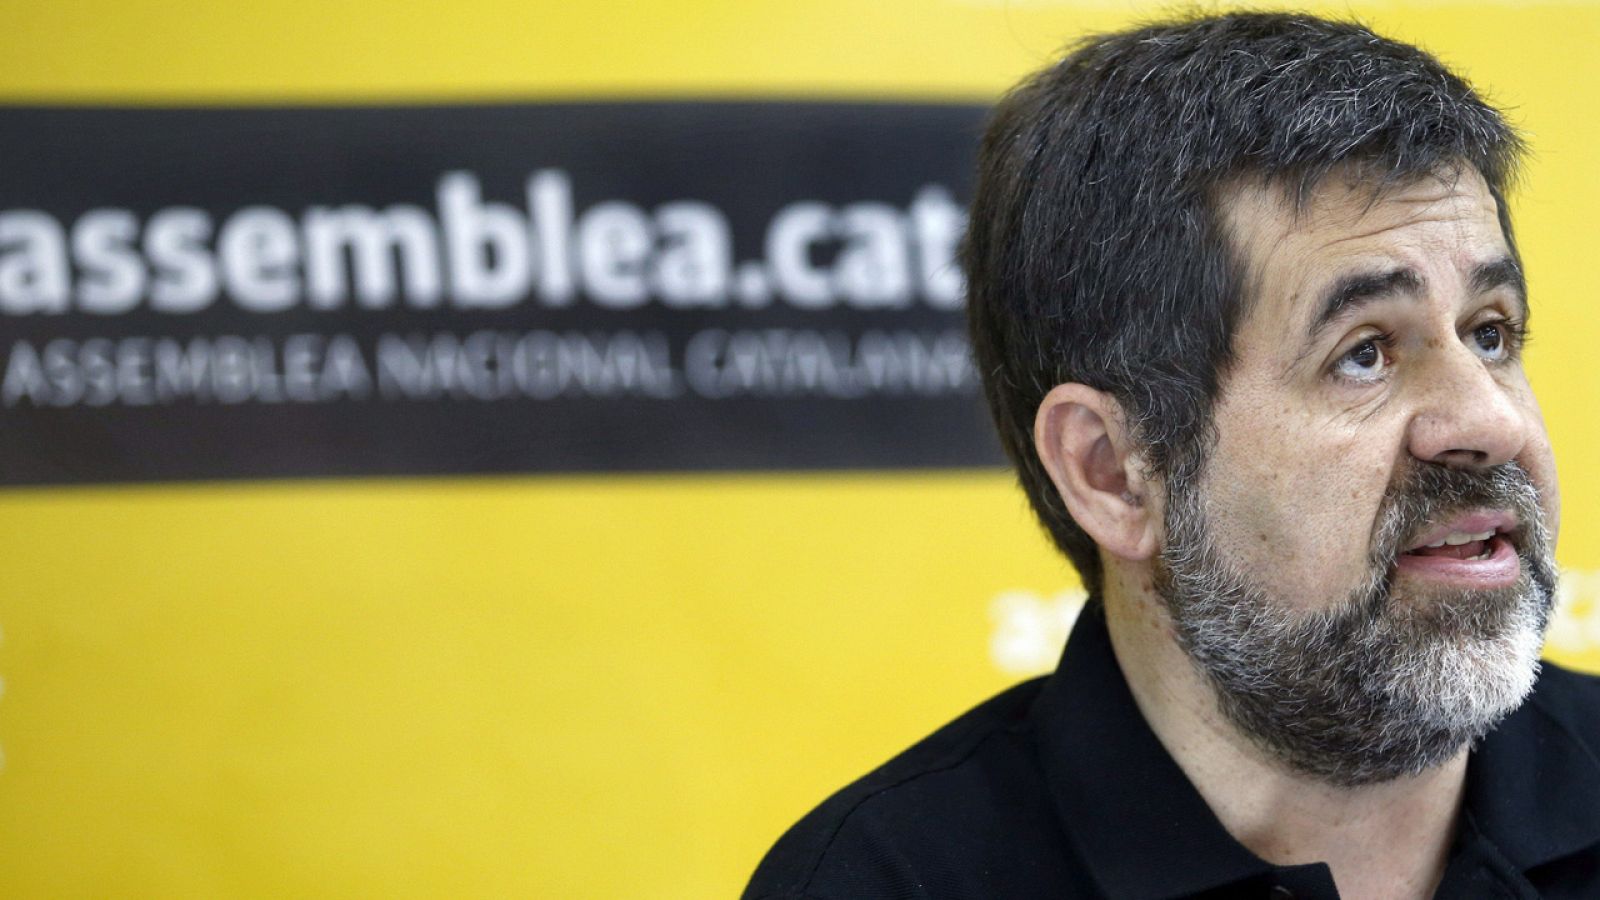 El presidente de la Assemblea Nacional de Catalunya (ANC), Jordi Sánchez.